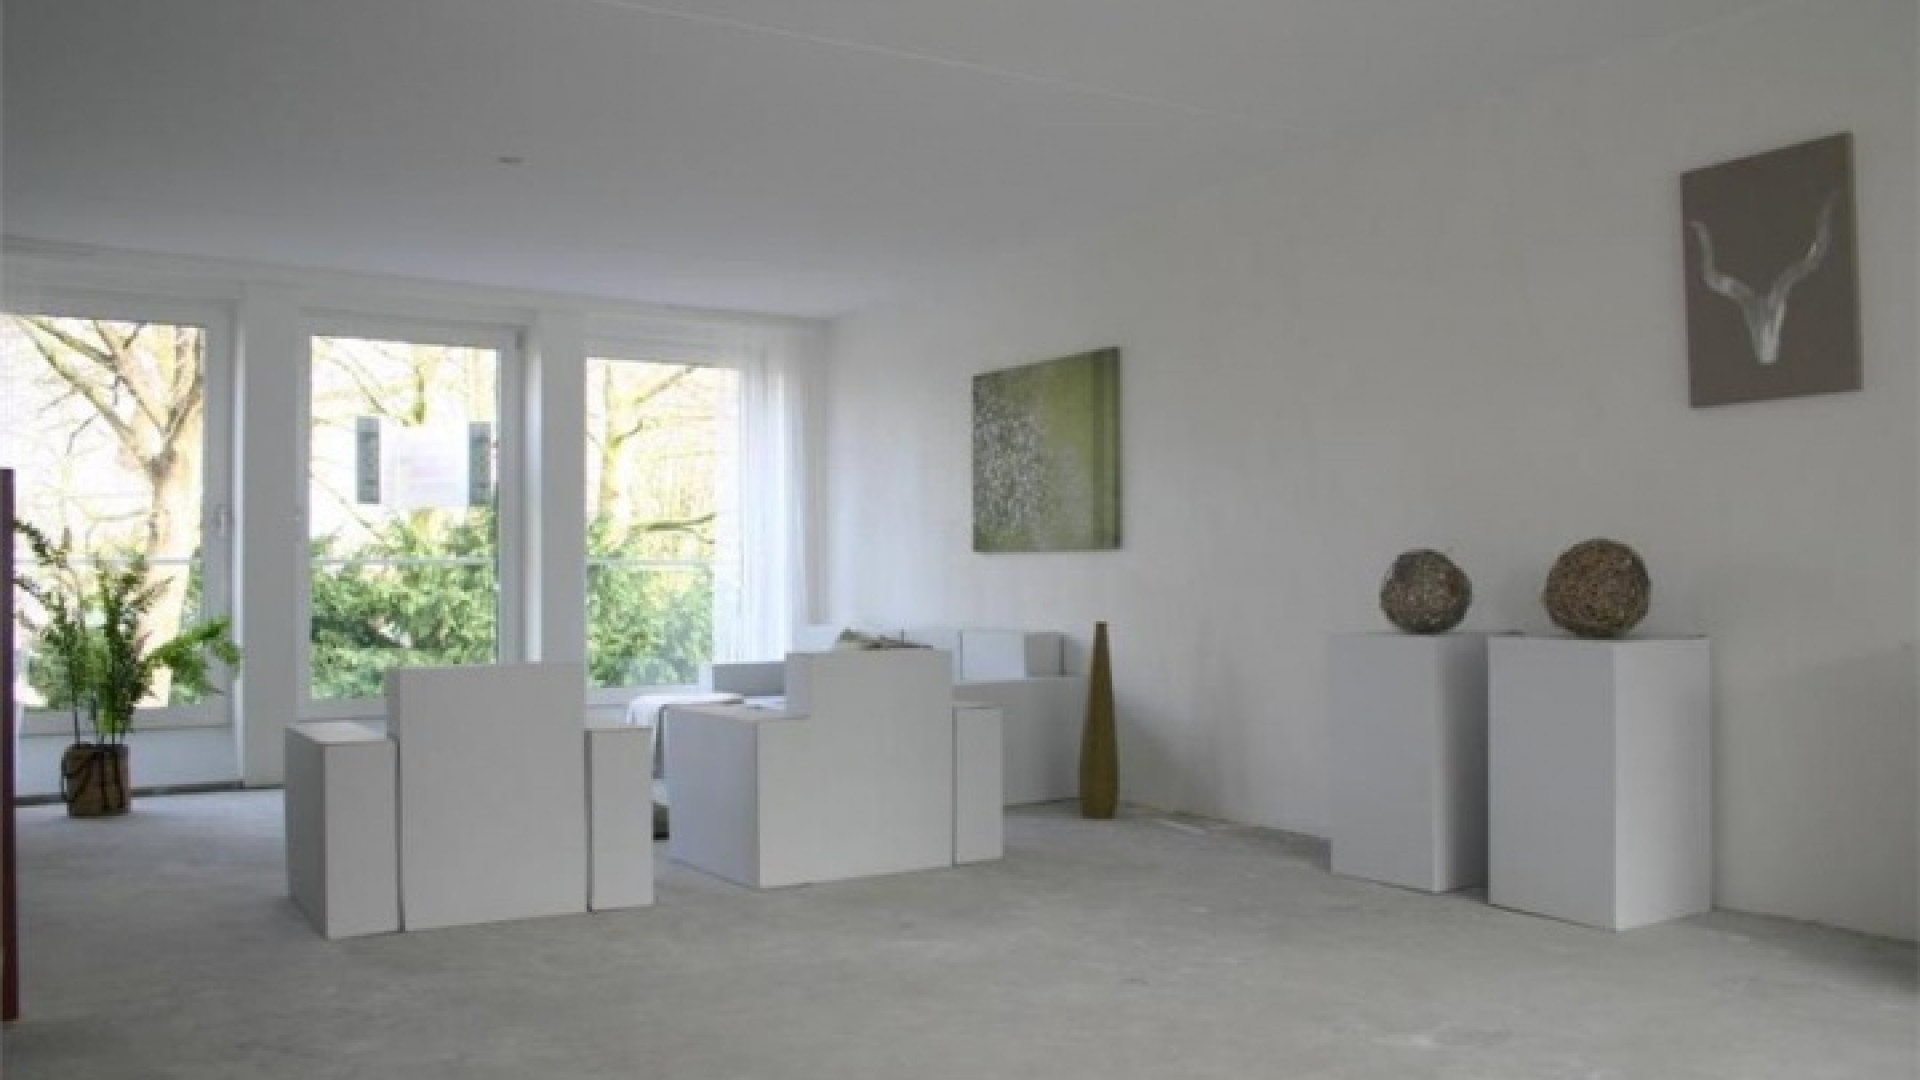 Dit is het nieuwe huis van Sonja Bakker. Zie foto's 9